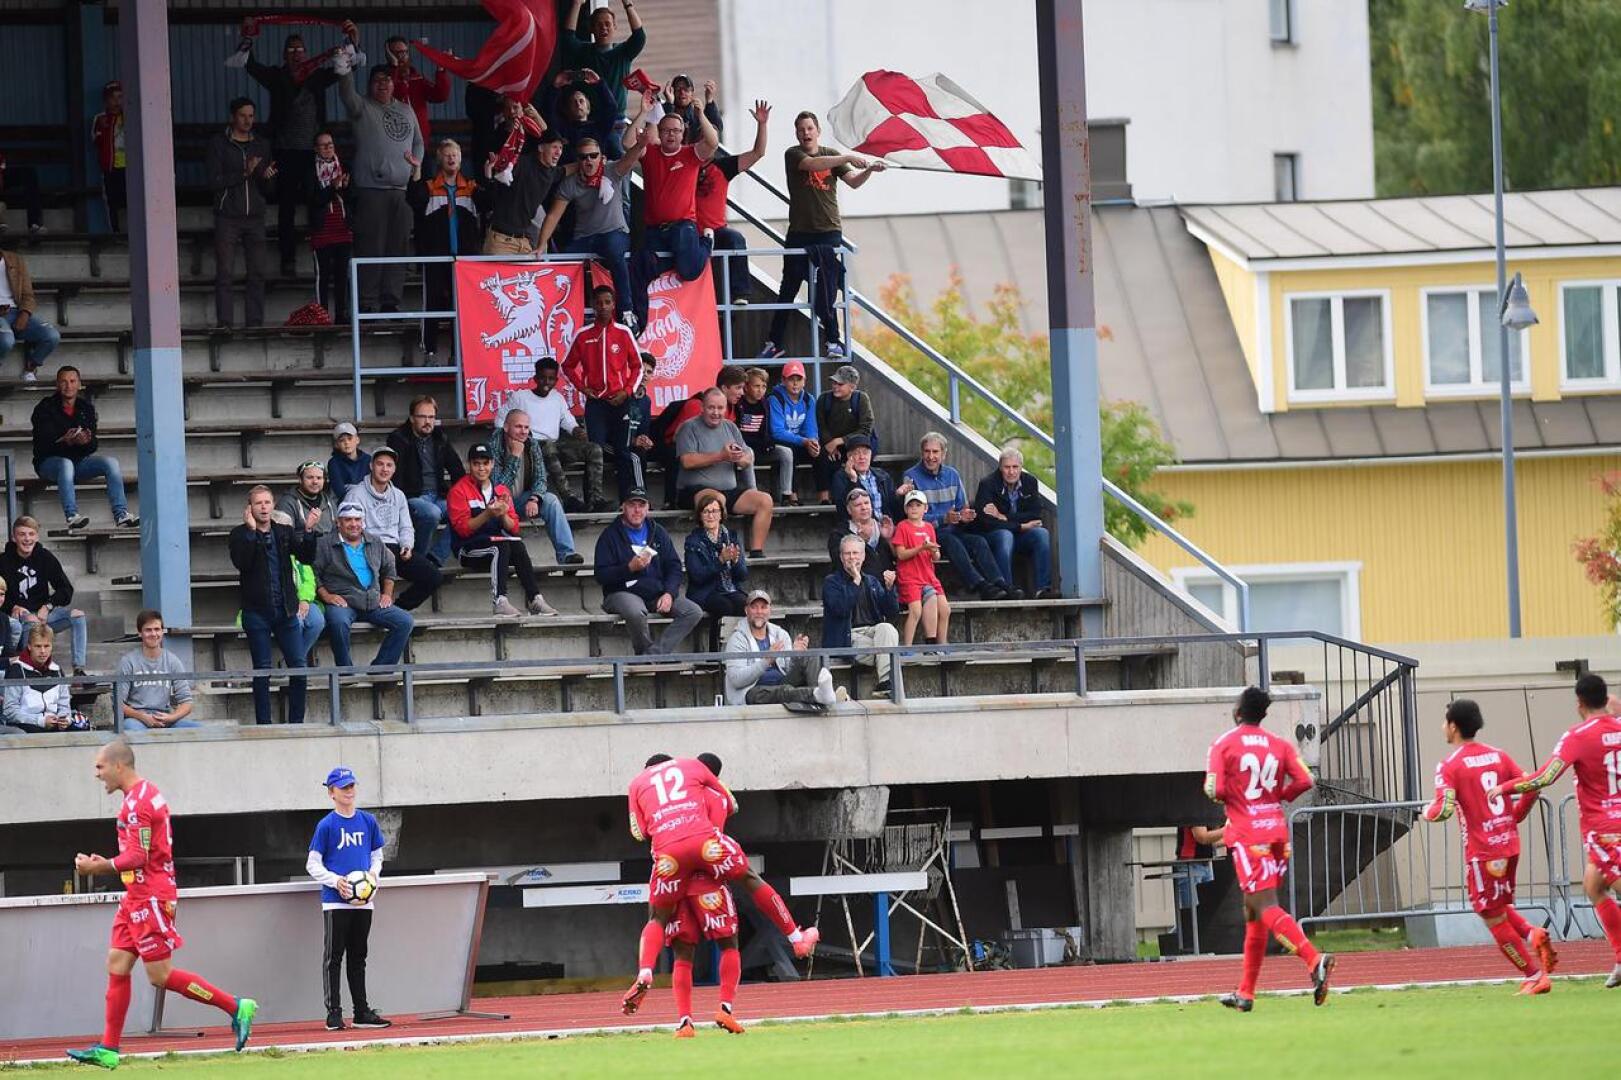 Kauden kolmannessa Rantaderbyssä oli punaisten vuoro juhlia. Jaro voitti kotikentällään KPV:n maalein 3-0.